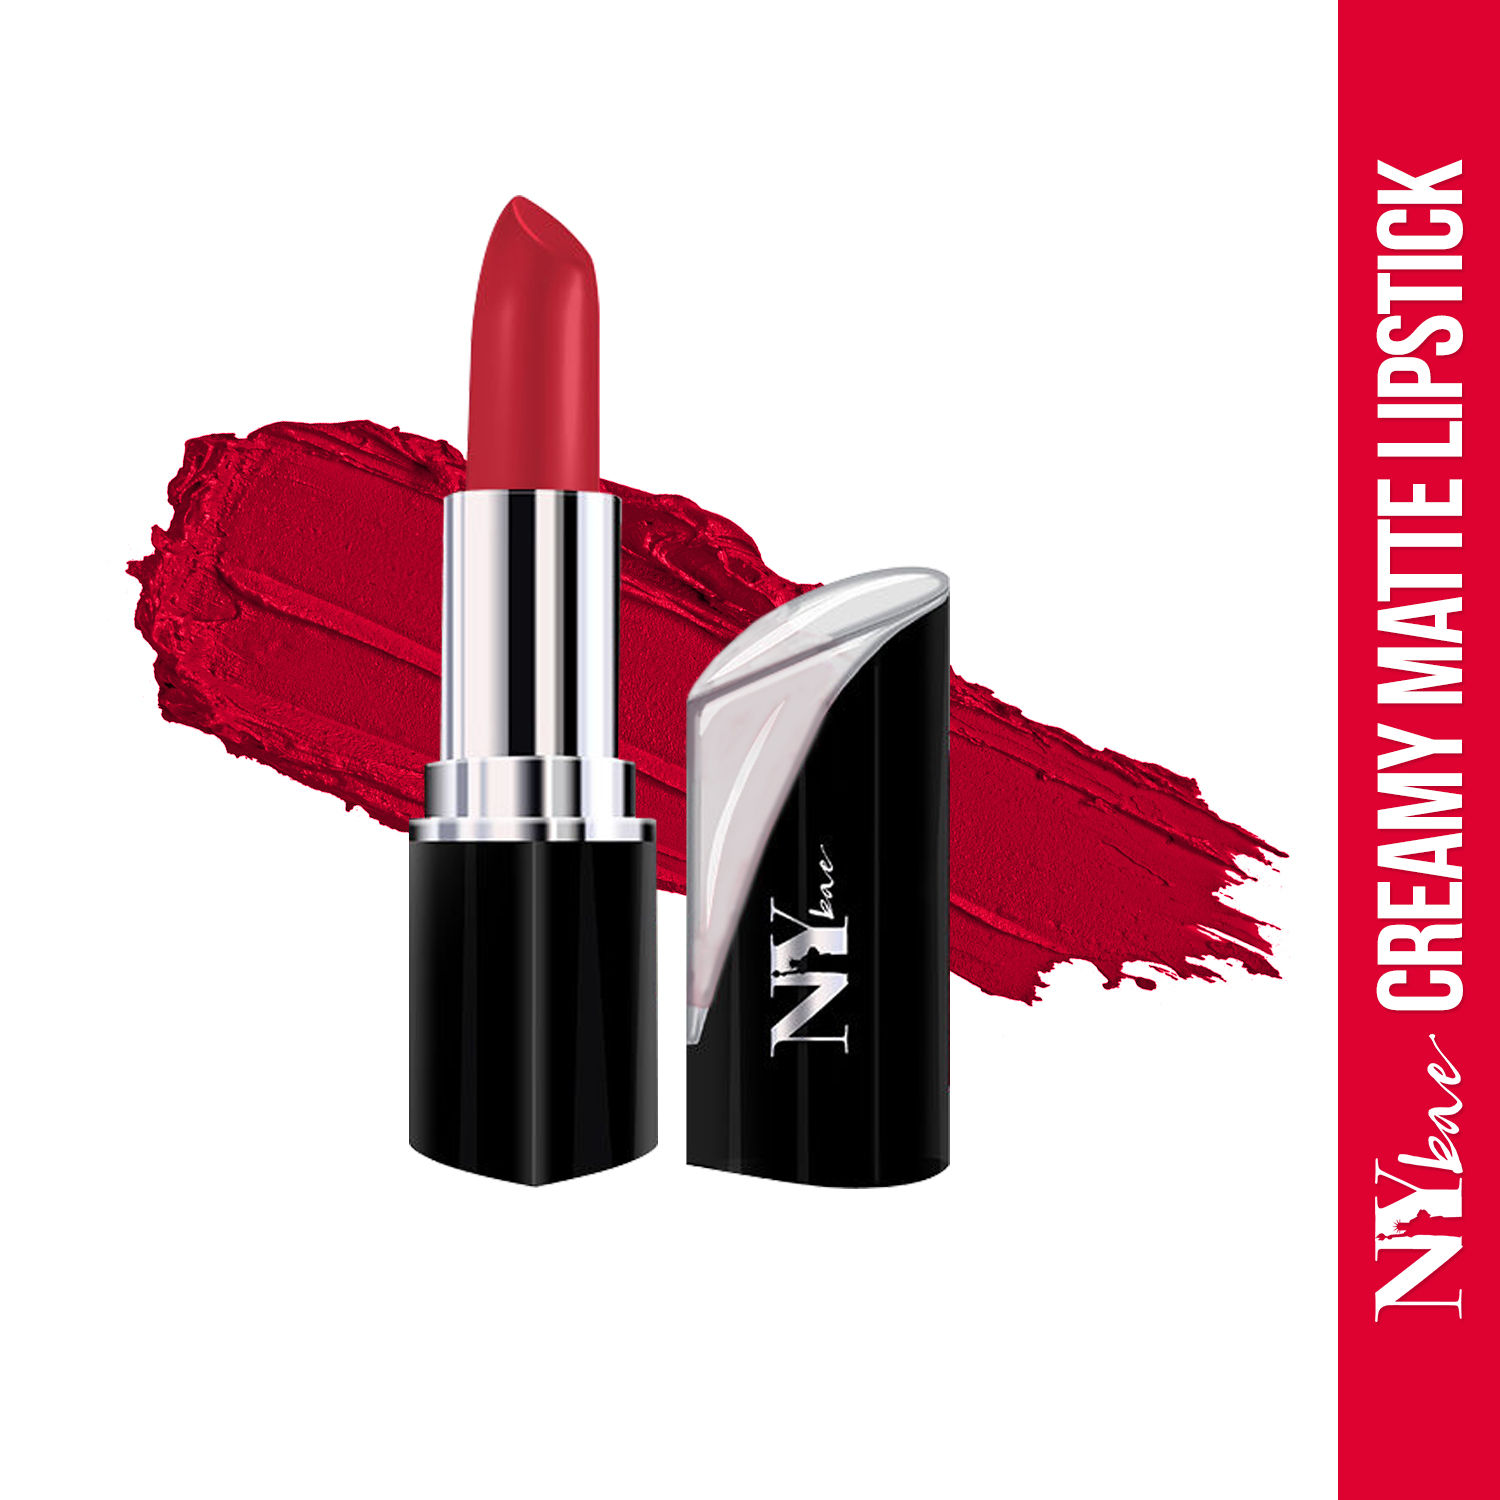 Buy NY Bae Matte Lipstick -Queens Way Or Highway 22 - Purplle